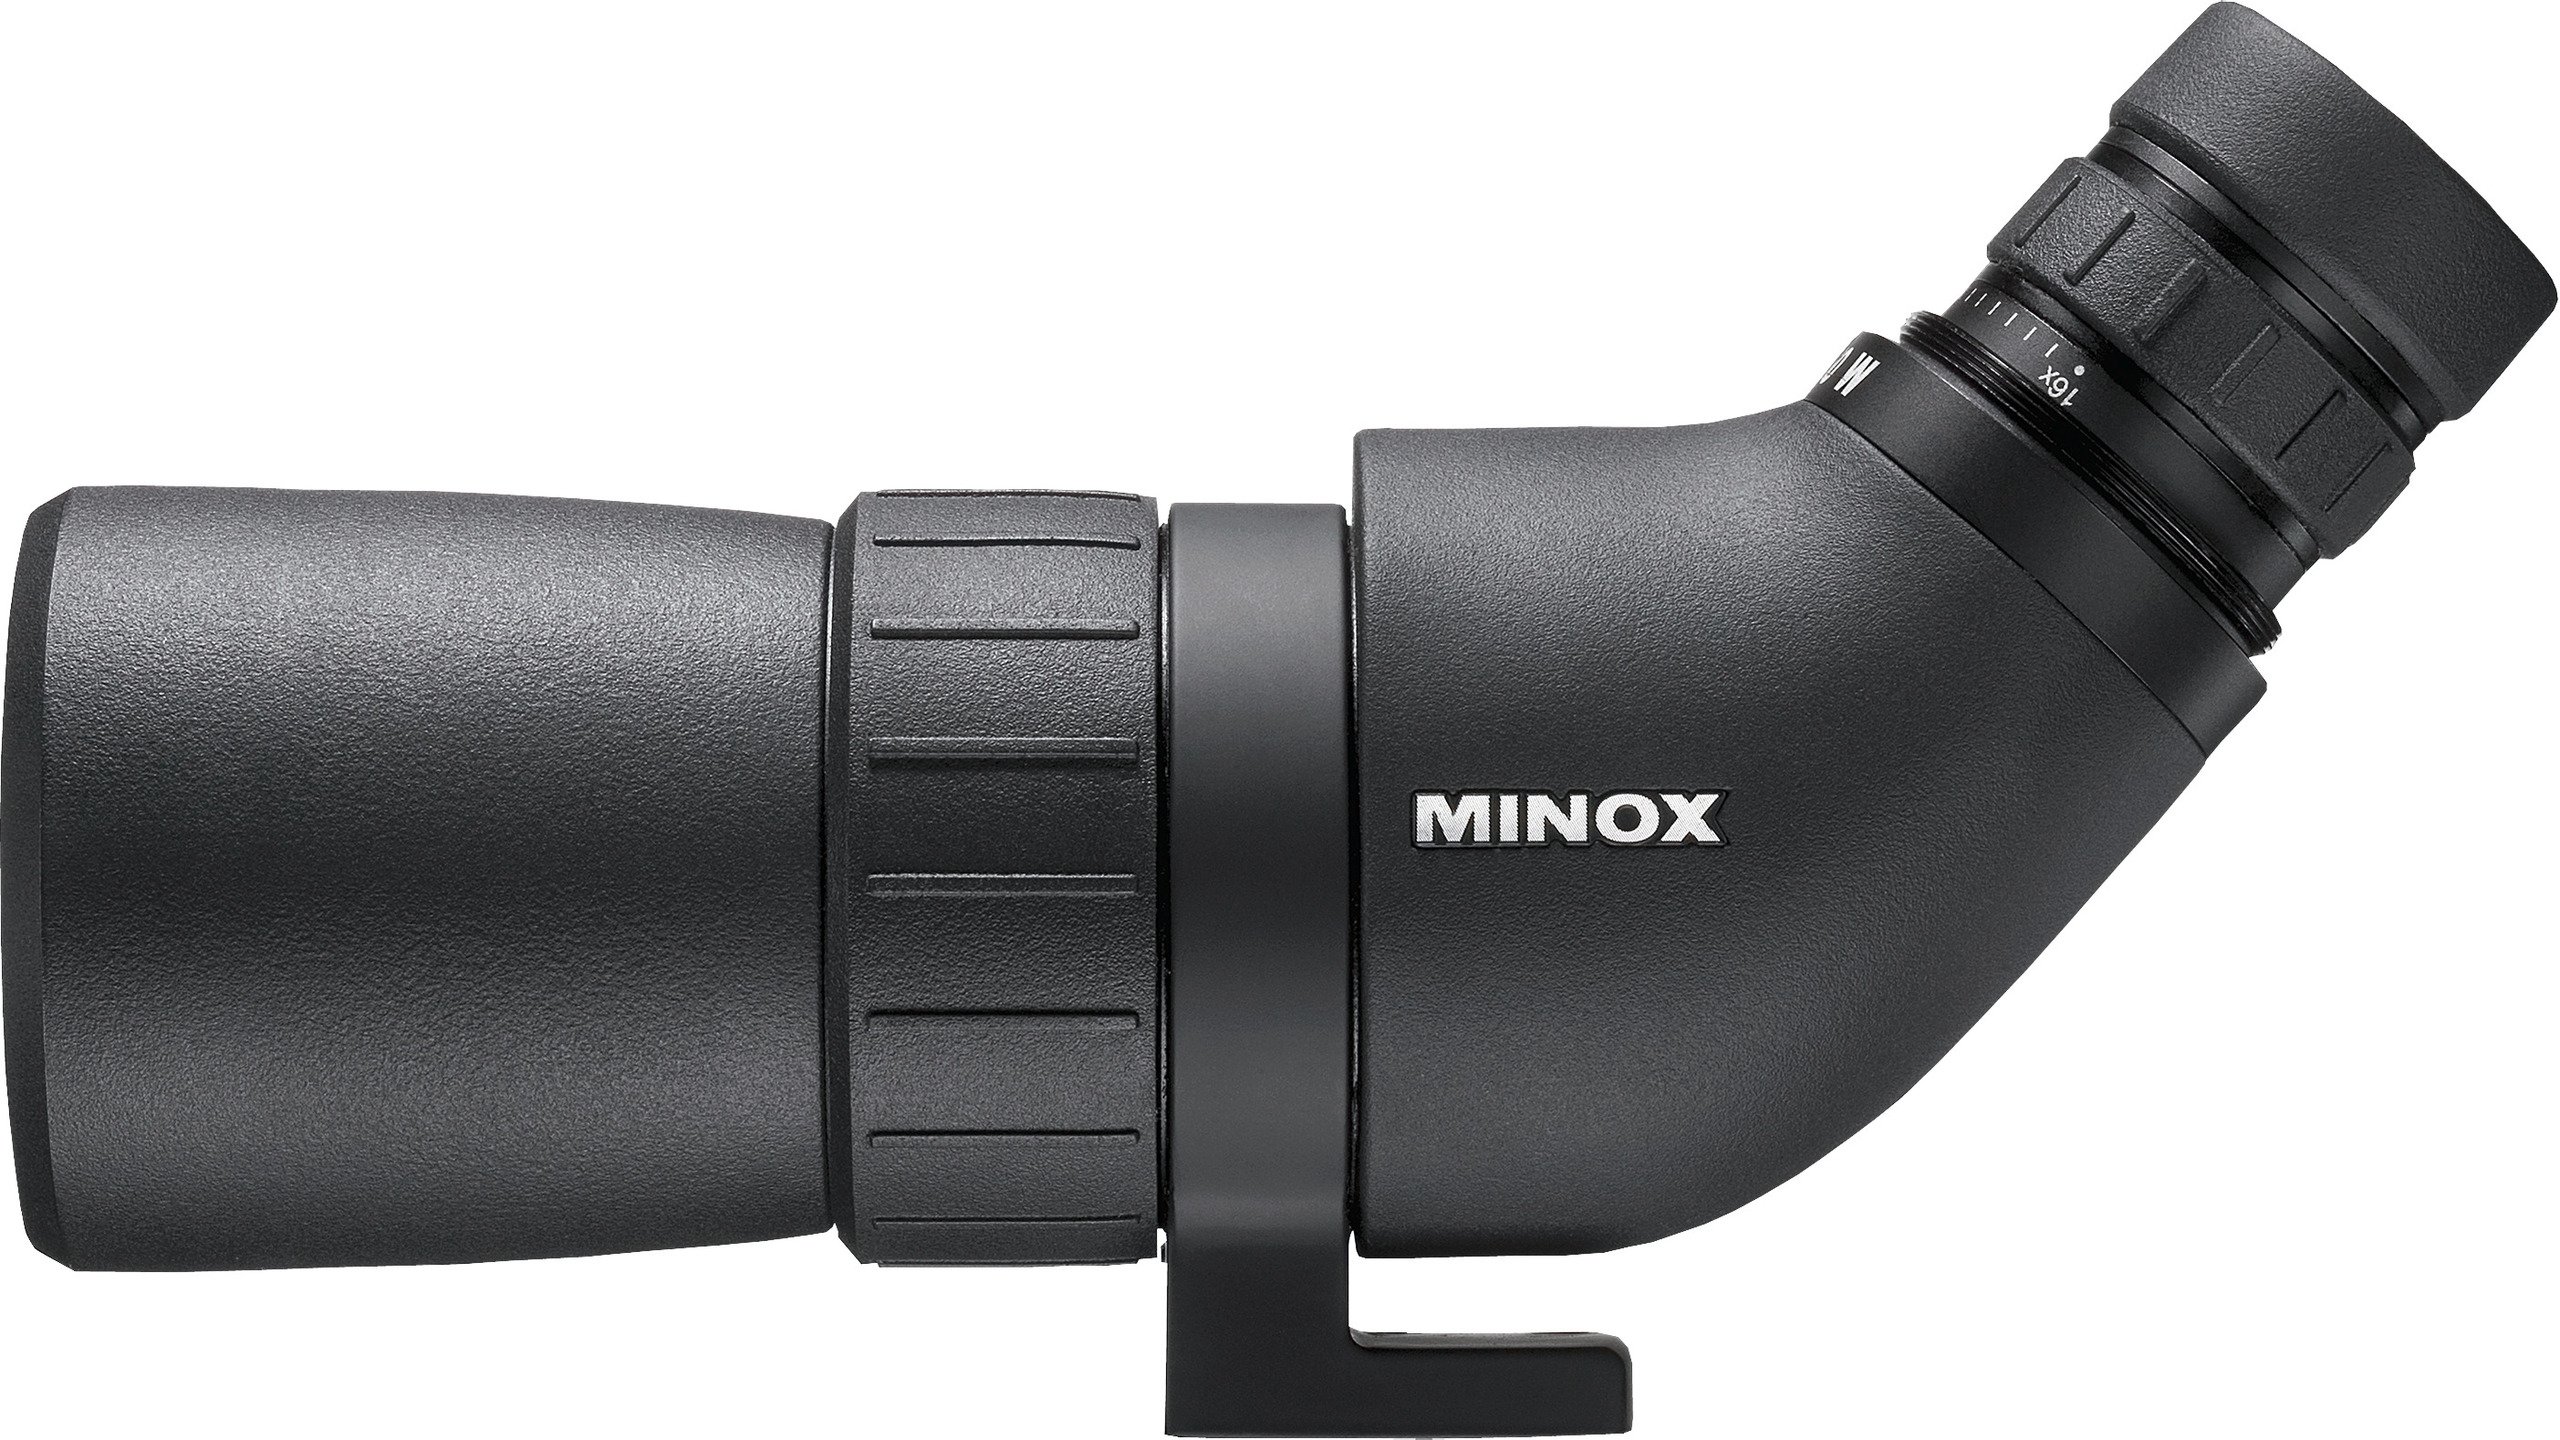 Minox Spektiv MD 50 W